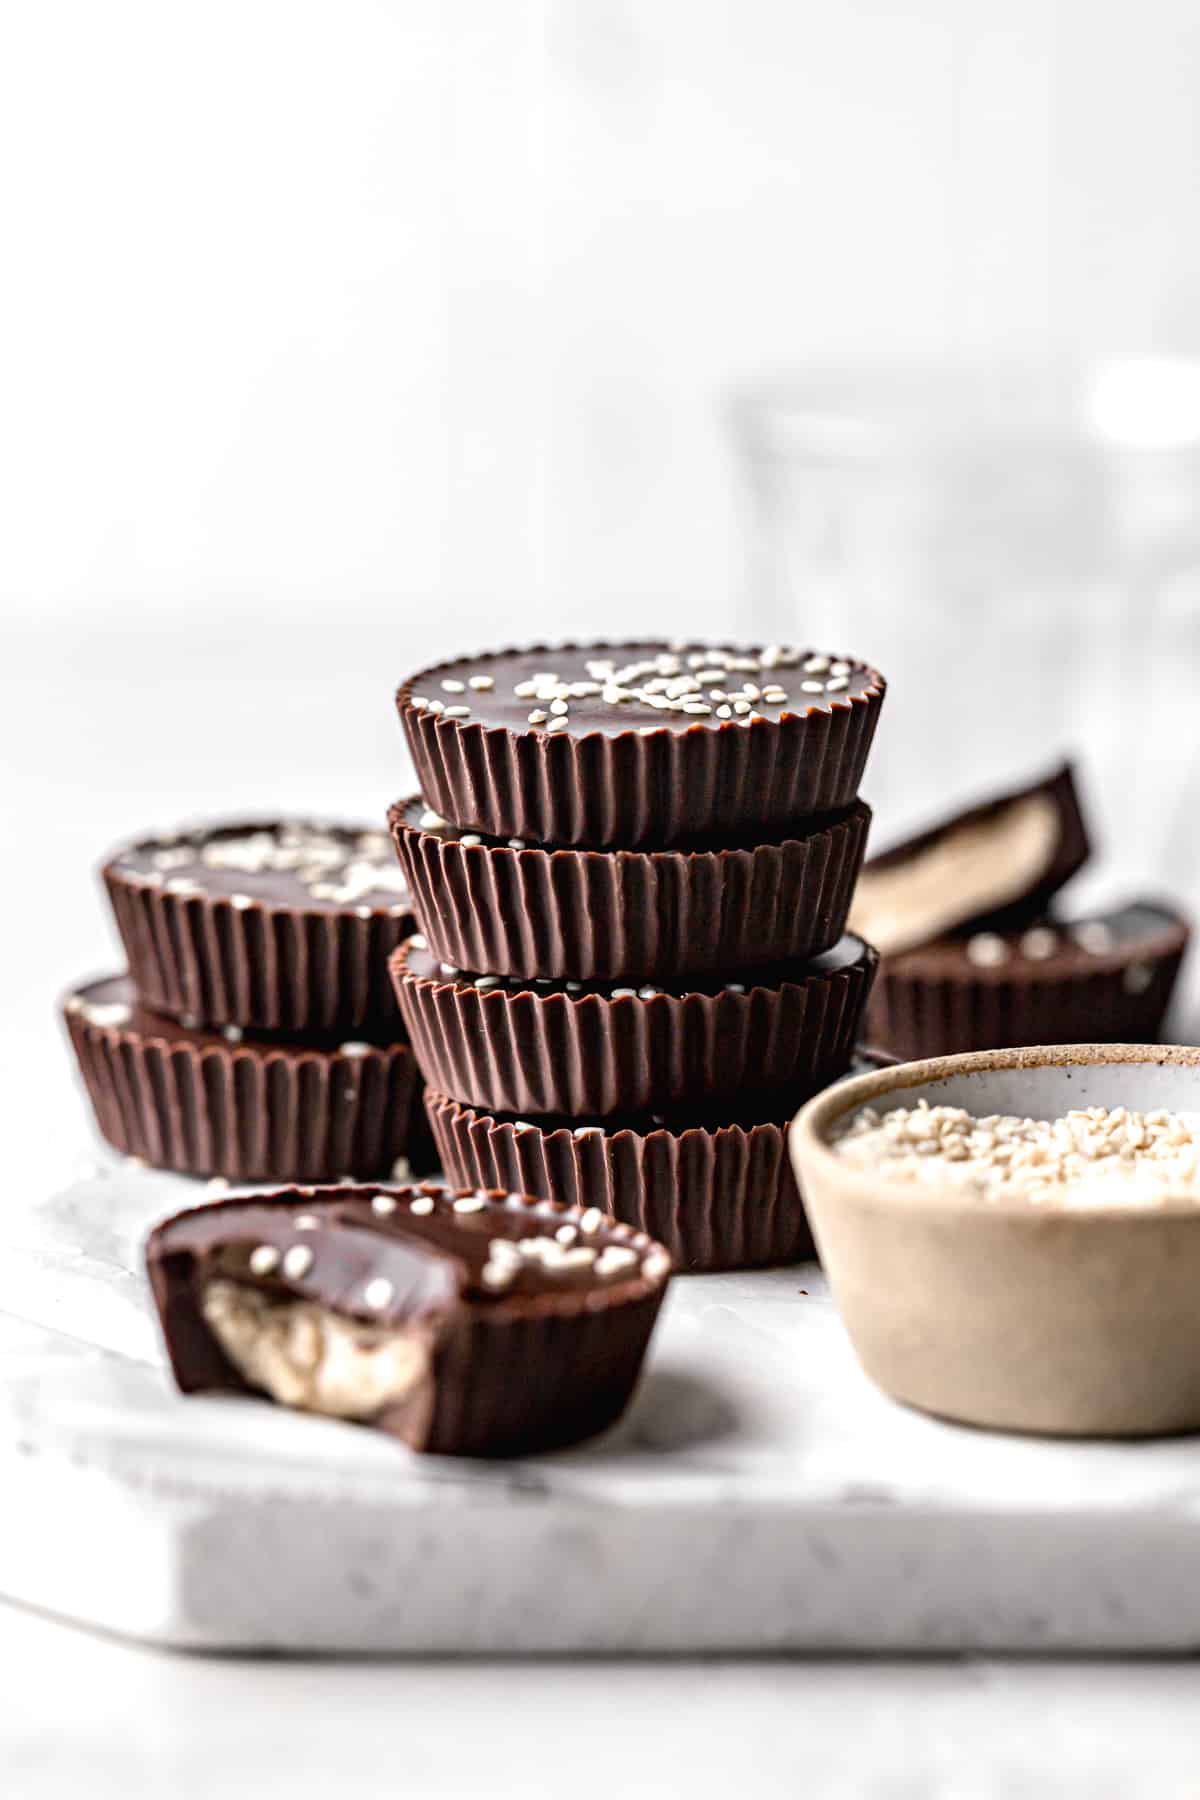 dark chocolate tahini cups stacked